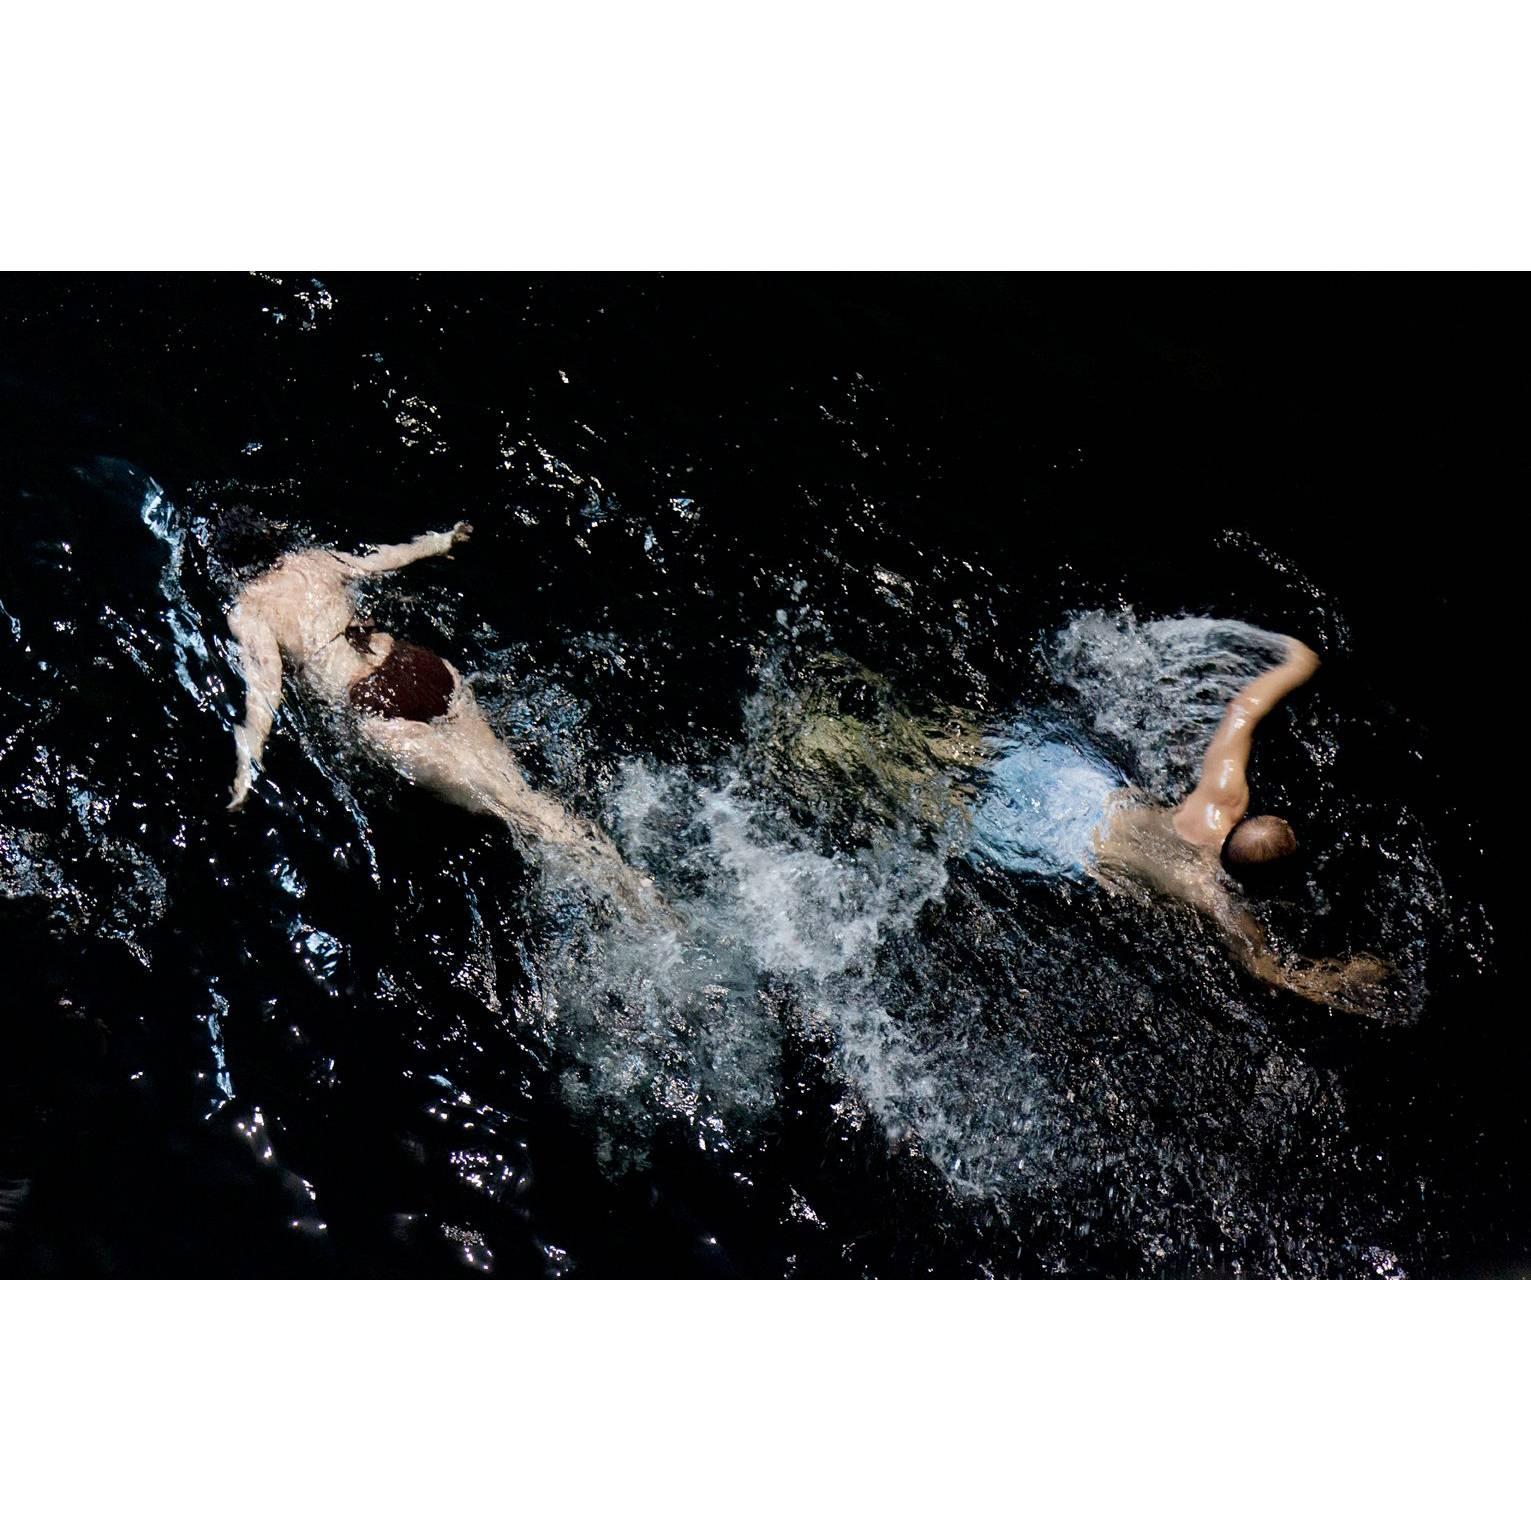 "Swim" 9301 Archival Print by Francine Fleischer For Sale